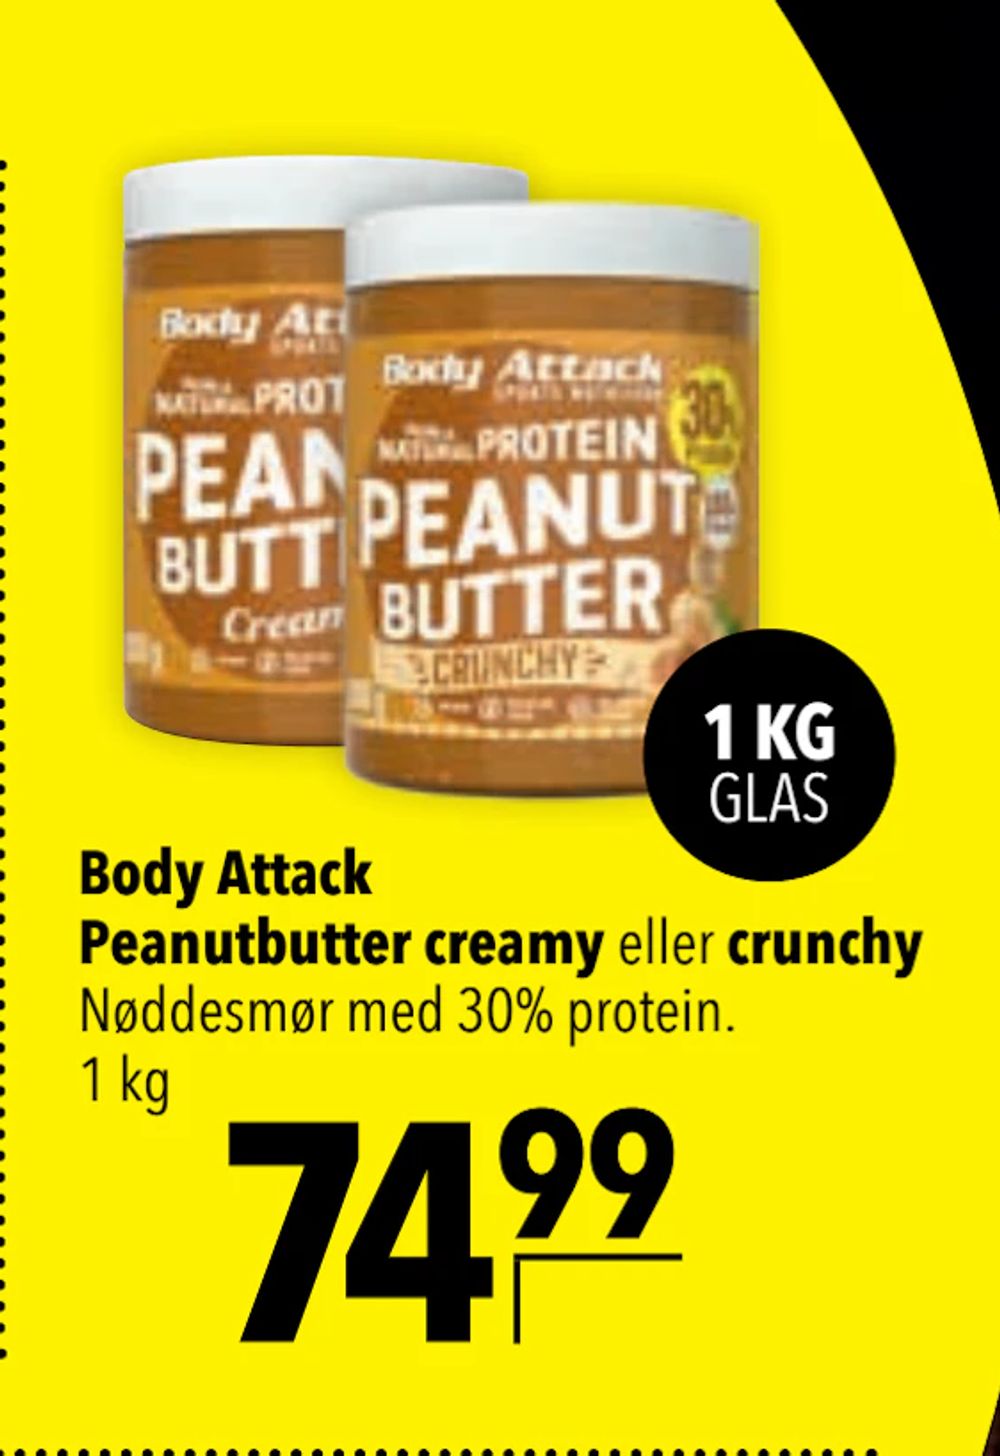 Tilbud på Body Attack Peanutbutter creamy eller crunchy fra CITTI til 74,99 kr.